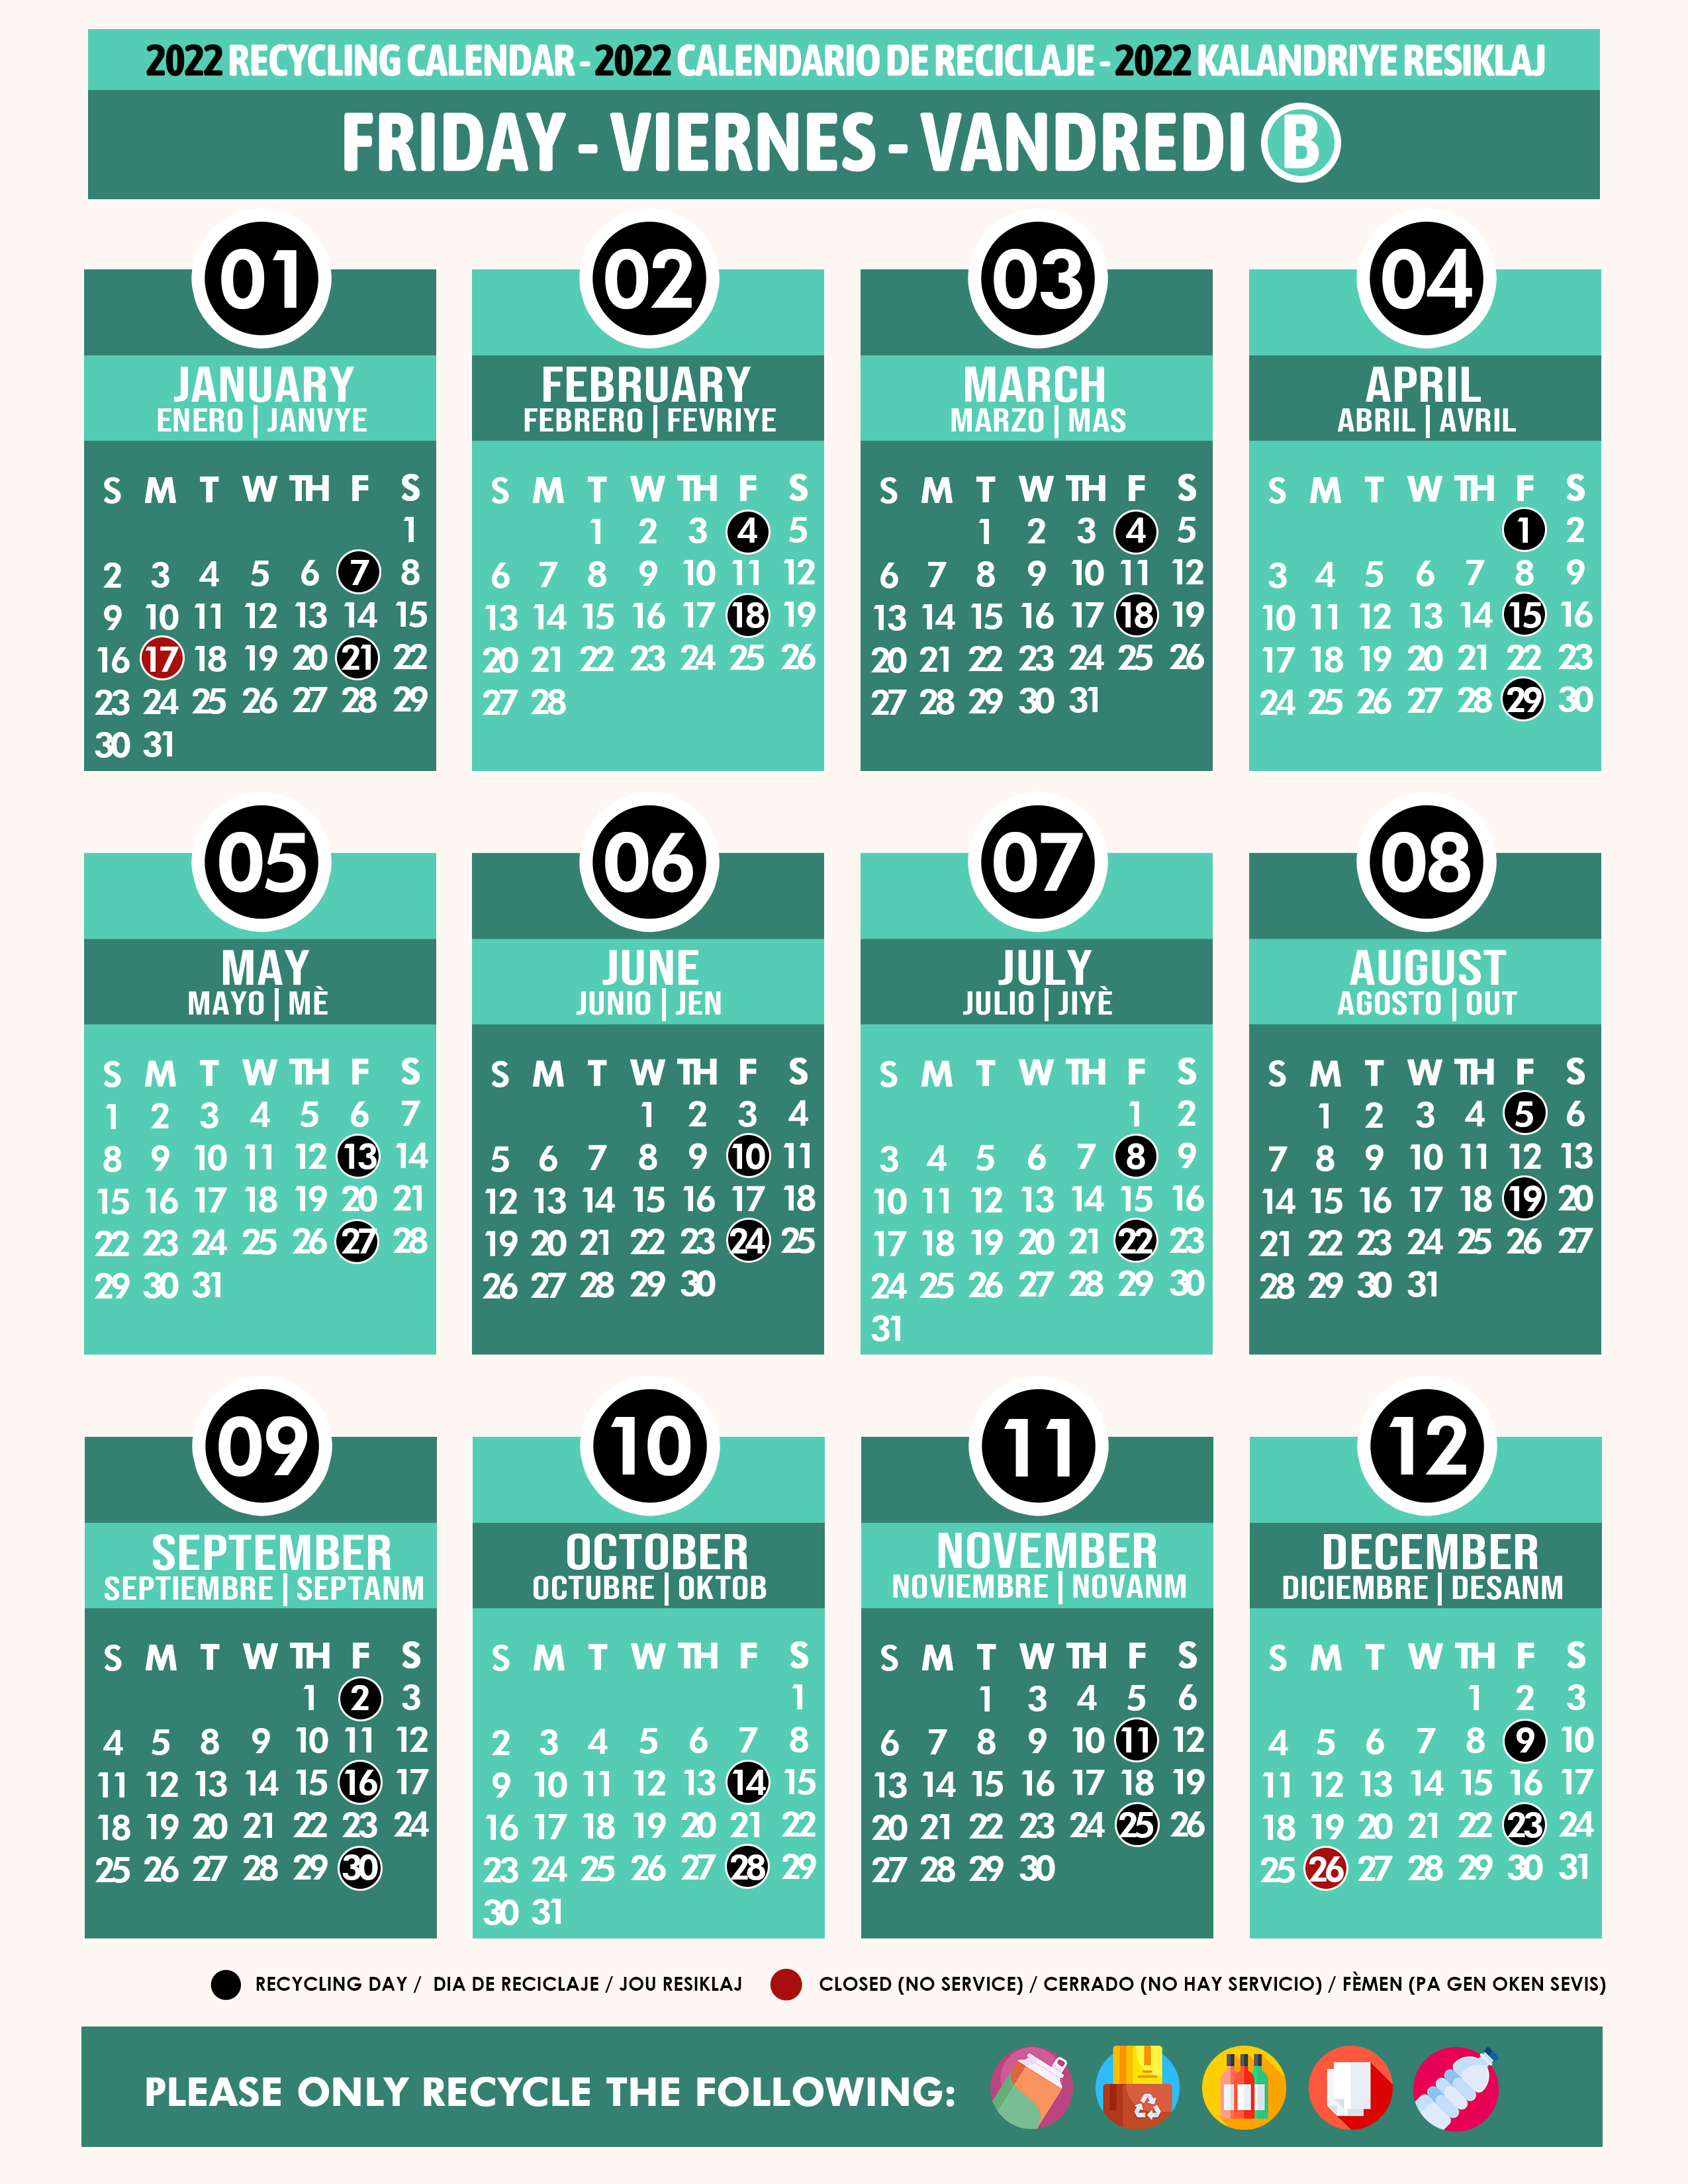 Miami Dade Calendar 2022 Recycling Calendar 2022 Friday B Teal - Miami